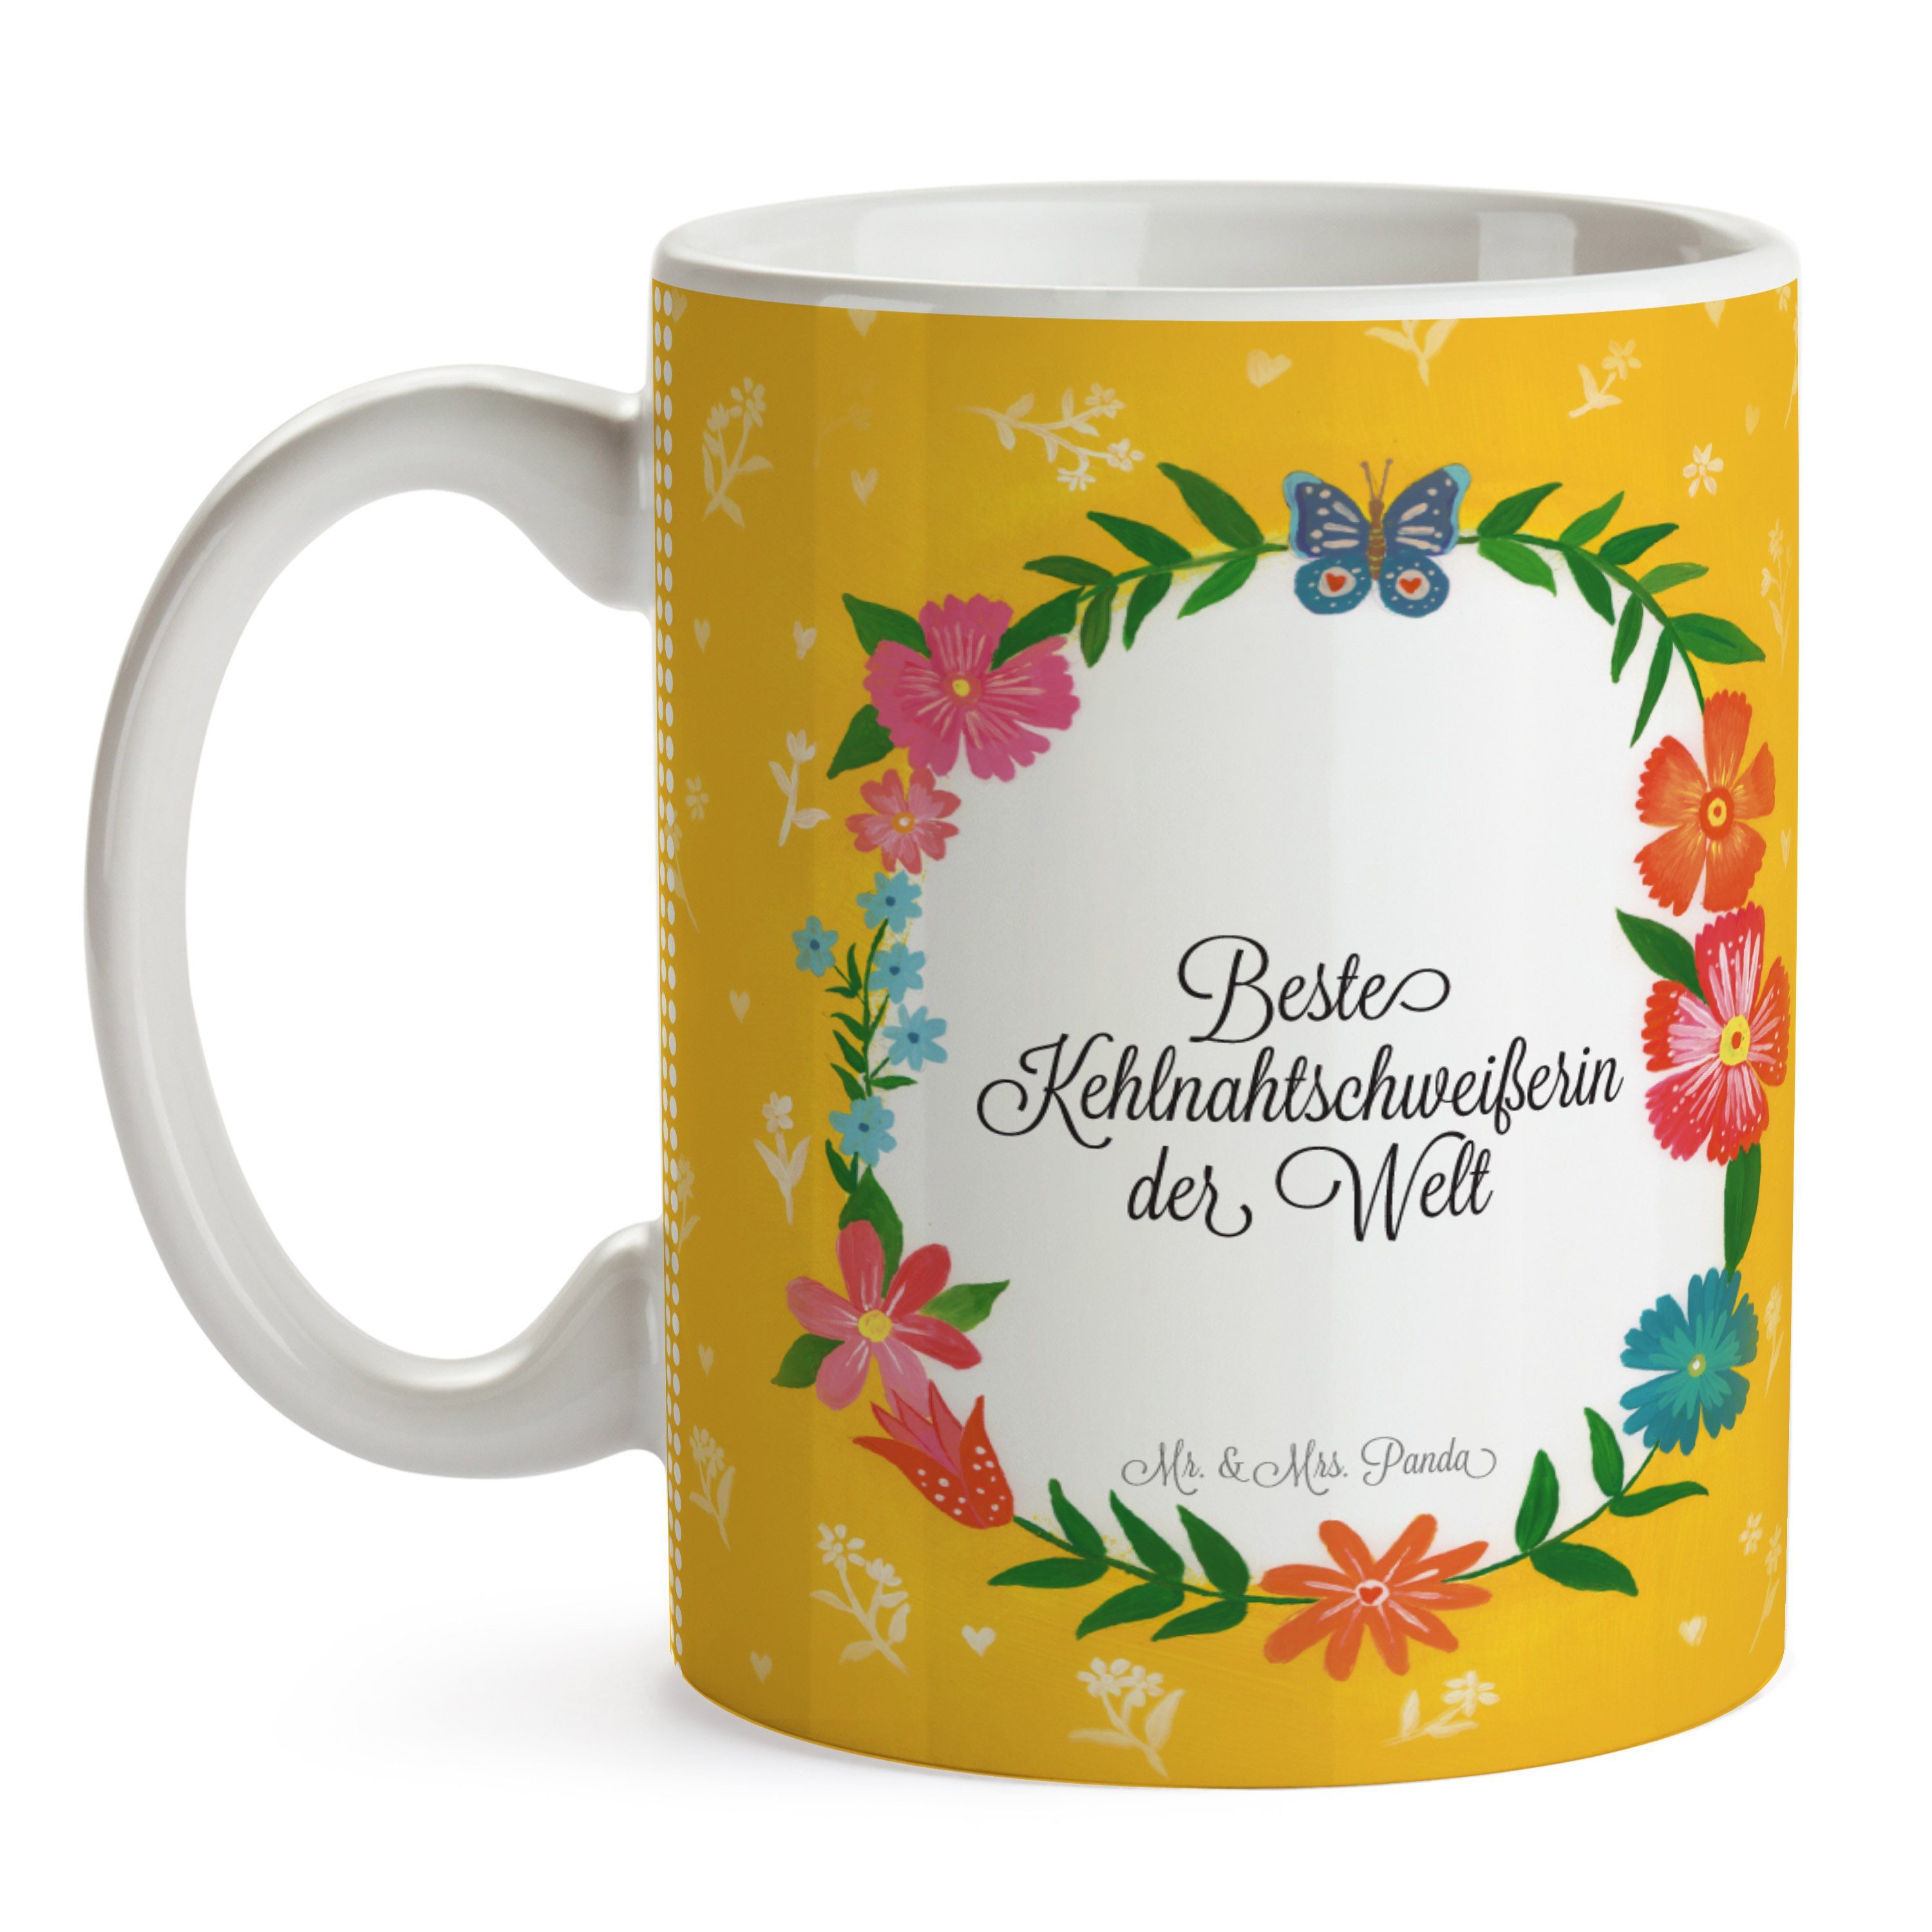 Mr. & Mrs. Panda Kaffeebecher, Keramik Geschenk, Schenken, Gratulation, Kehlnahtschweißerin Tasse 